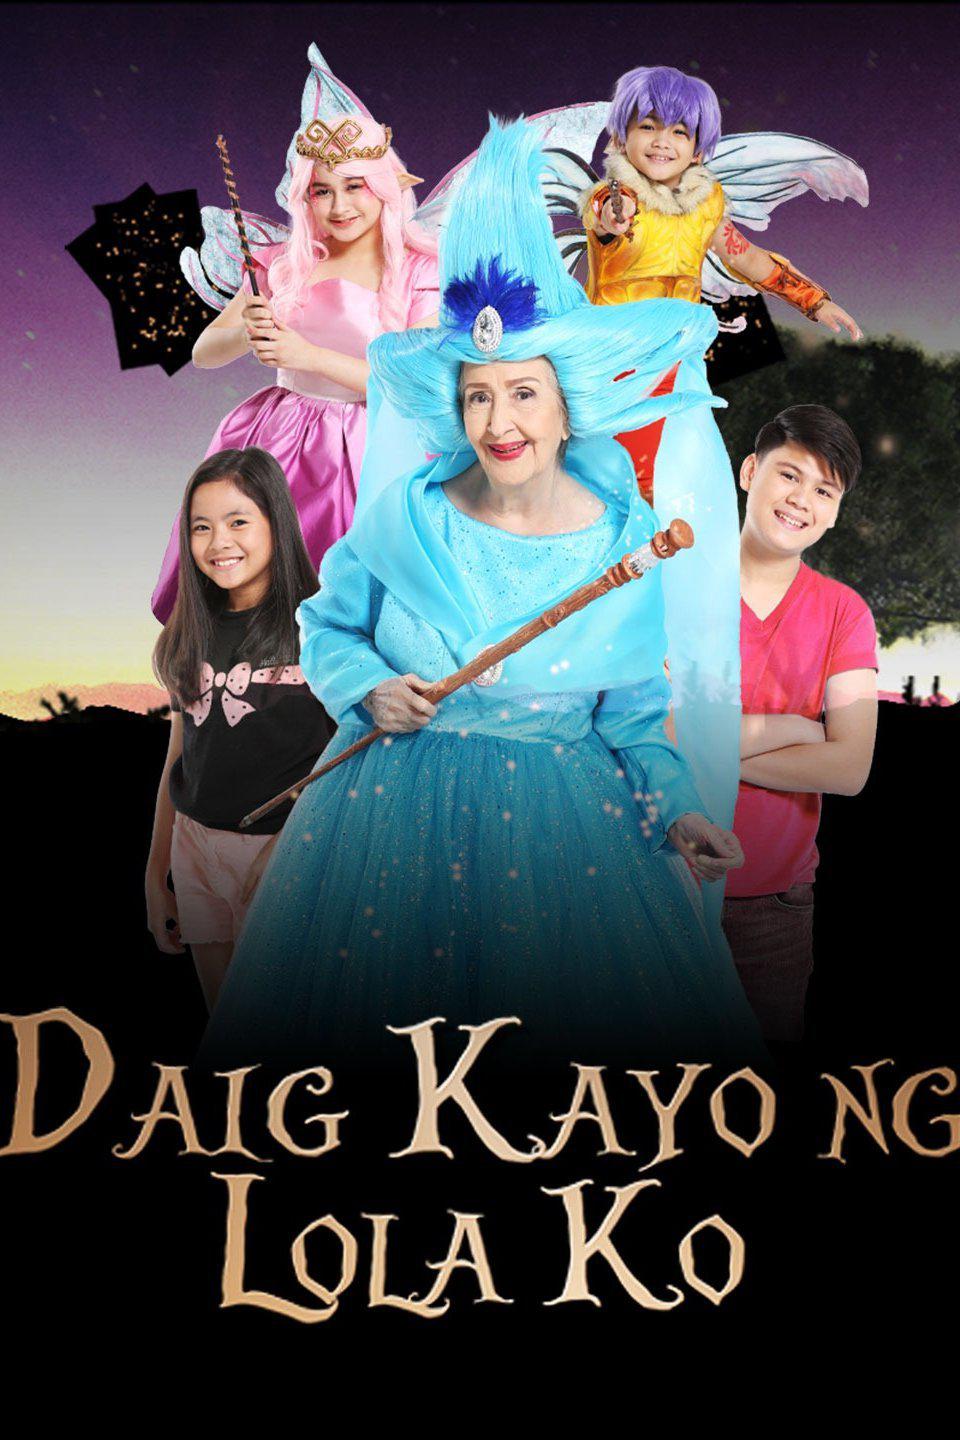 TV ratings for Daig Kayo Ng Lola Ko in Alemania. GMA TV series